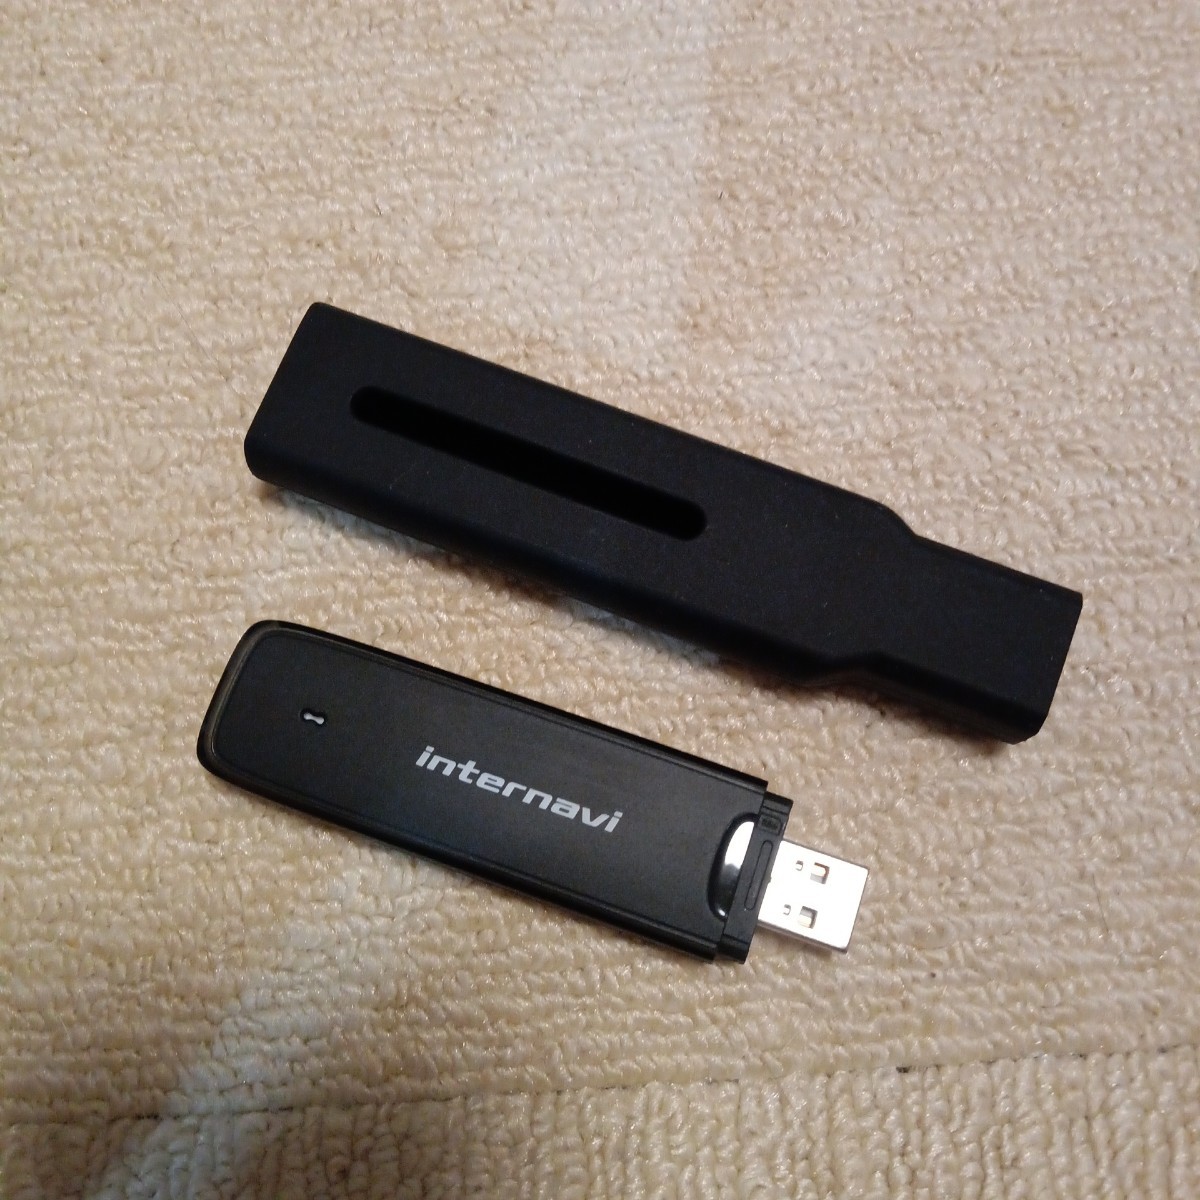  ホンダGathers プレミアムクラブ インターナビ リンクアップ フリーデータ 通信 USB本体 HSK-1000G SIMカード internavi リンクフリーの画像1